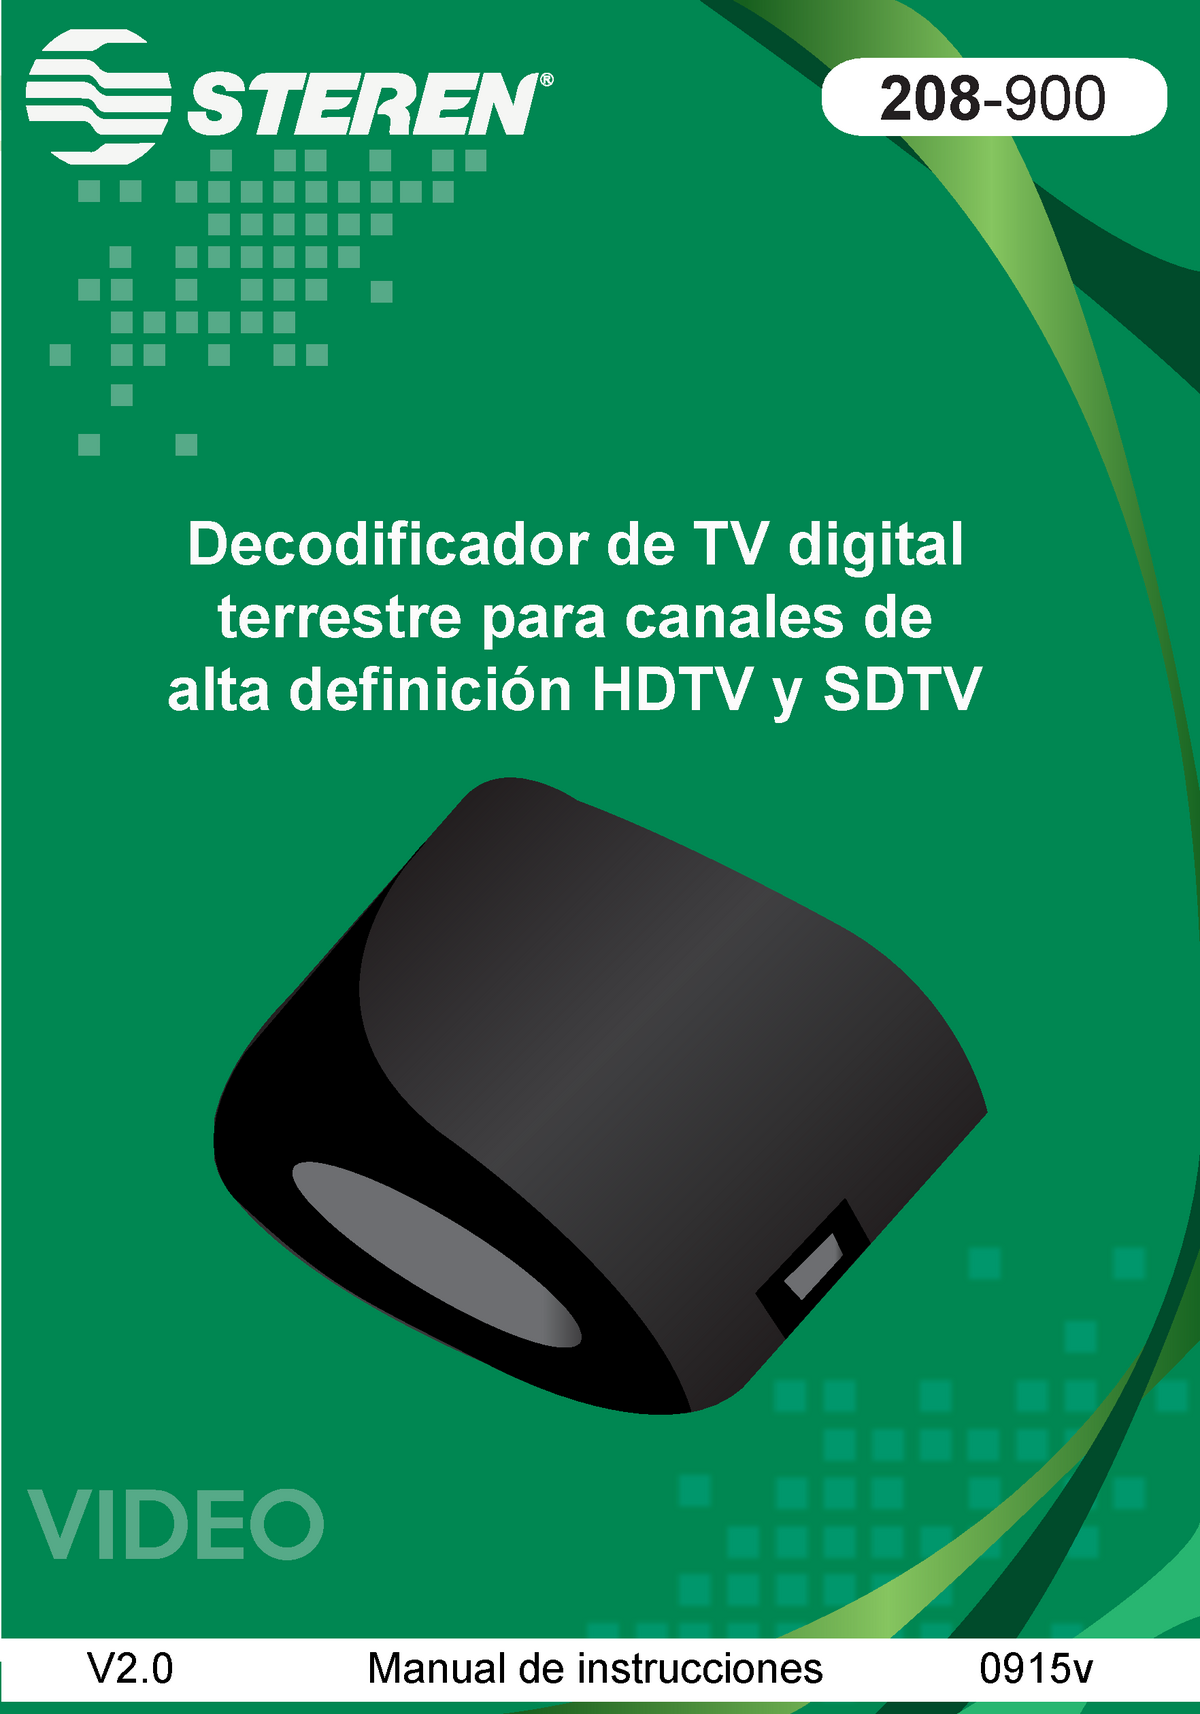 Decodificador de TV digital para canales de alta definición